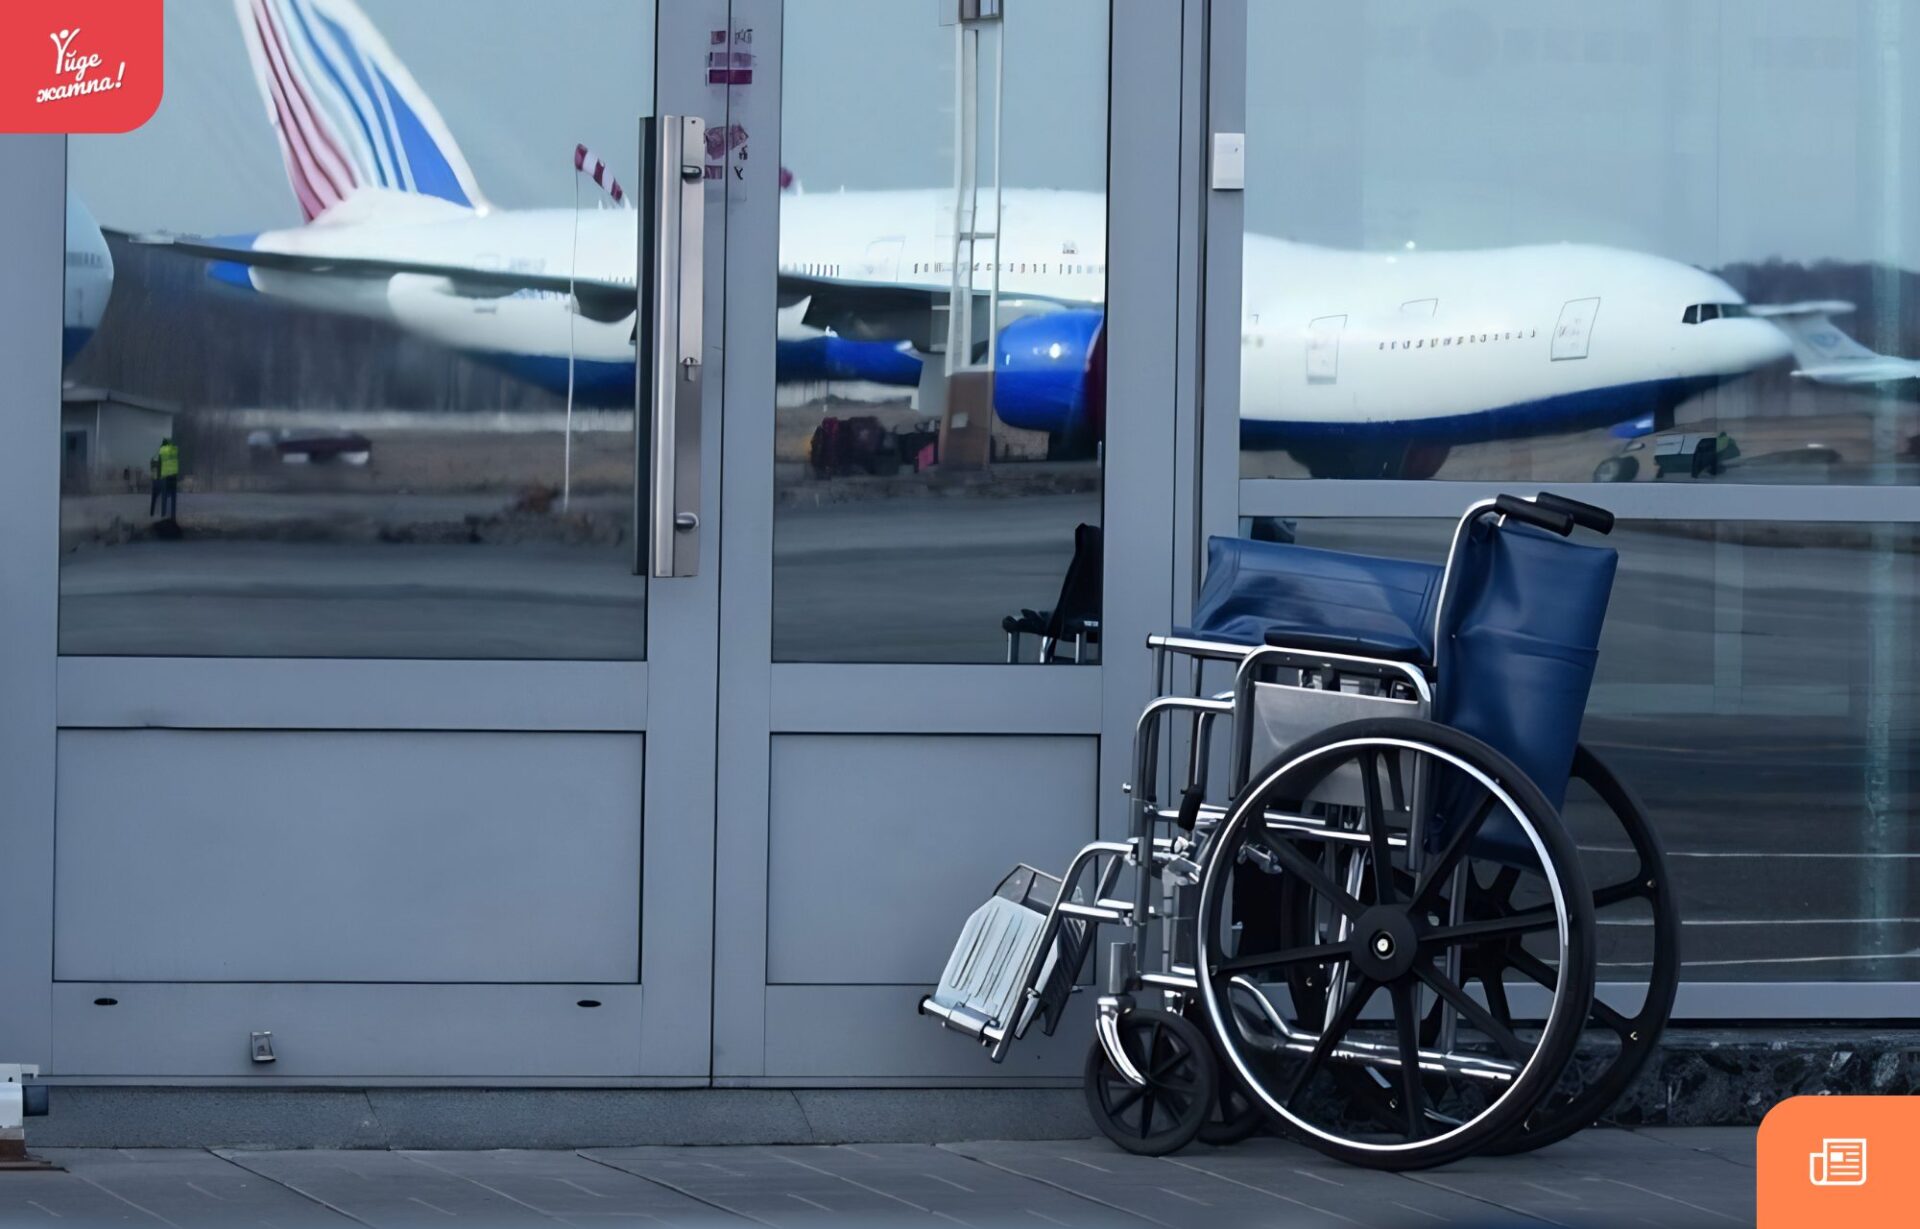 Услуга сопровождения в аэропорту. Инвалид в самолете. Маломобильные пассажиры в аэропорту. Инвалиды в аэропорту. Пассажиры с ограниченными возможностями.